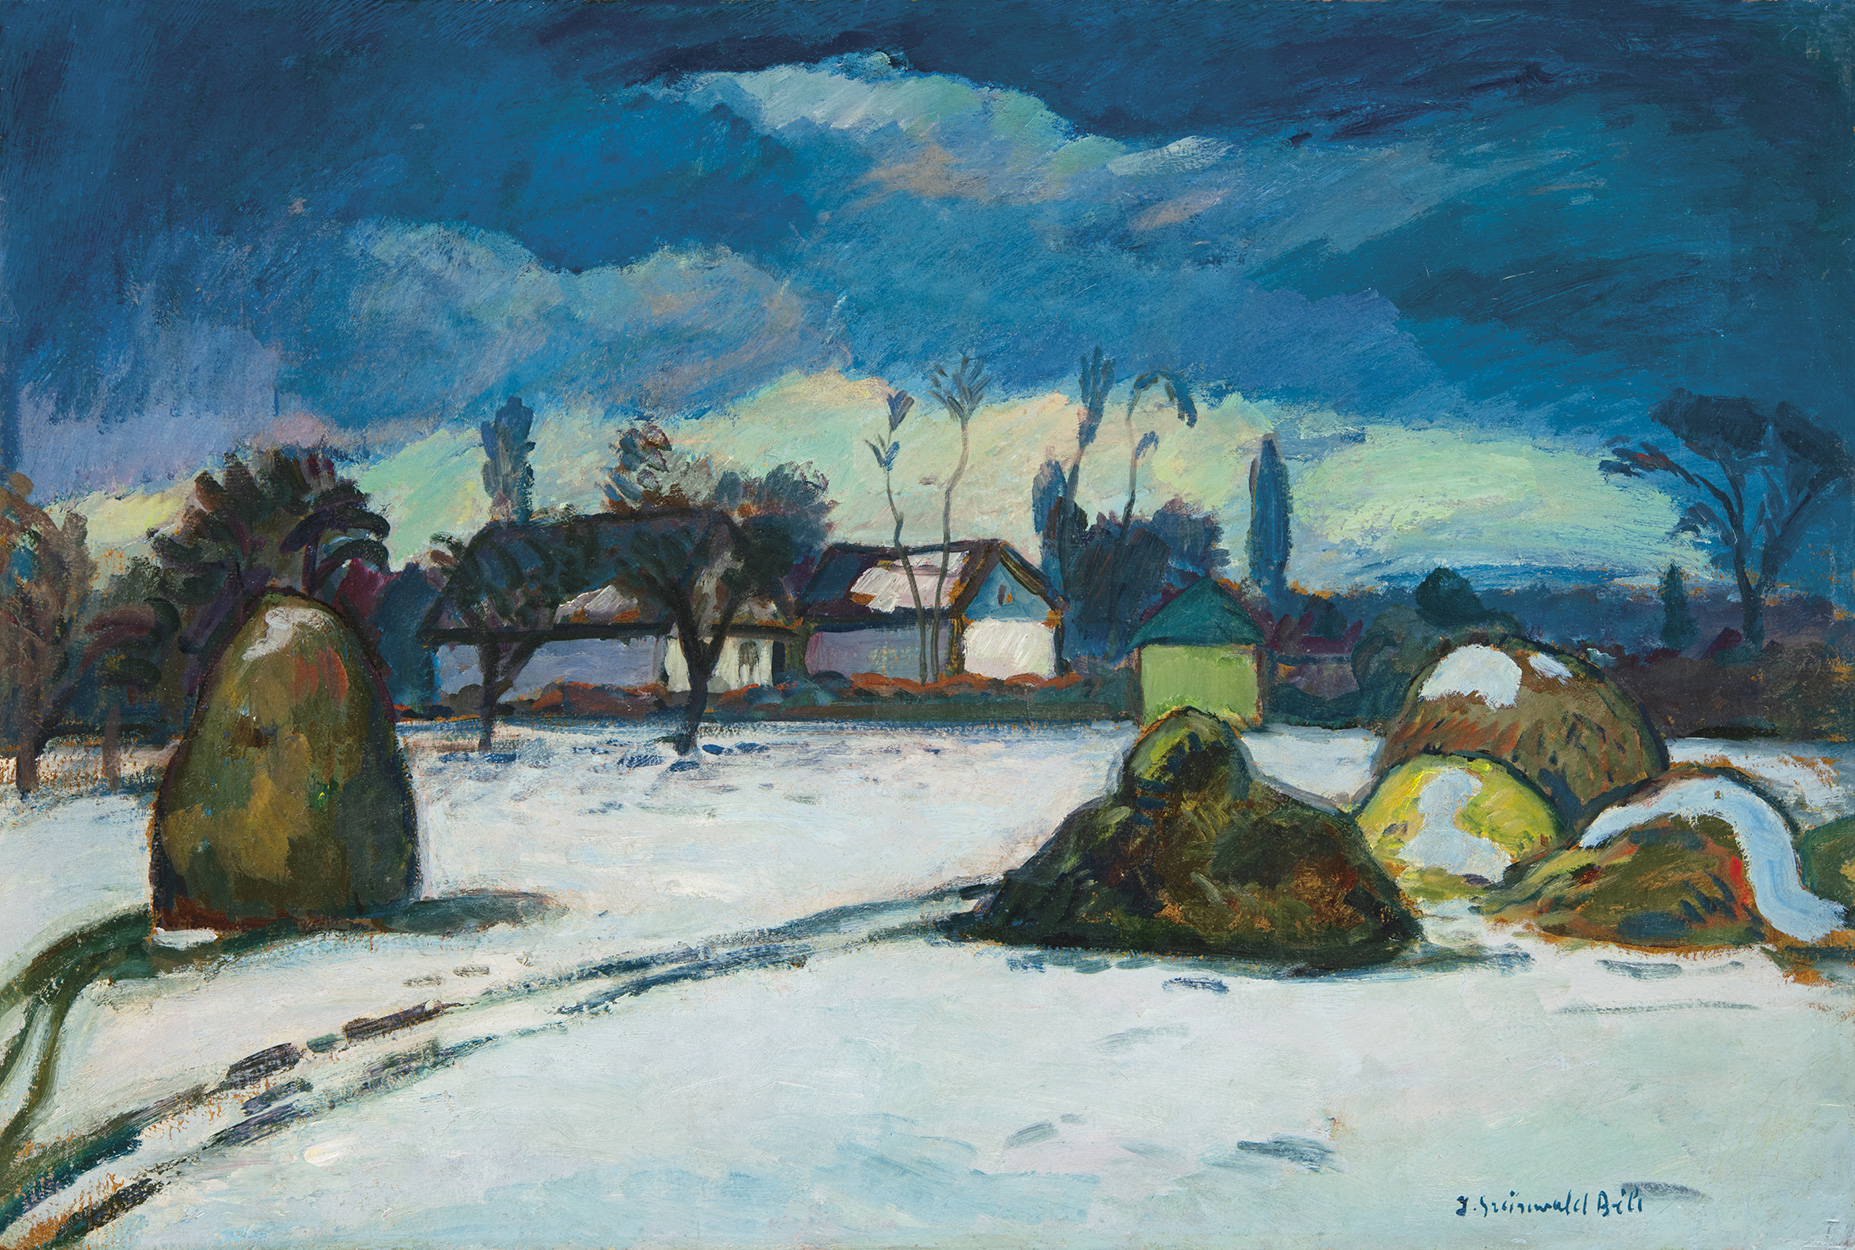 Iványi Grünwald Béla (1867-1940) Snowy Village (Kecskemét), around 1915